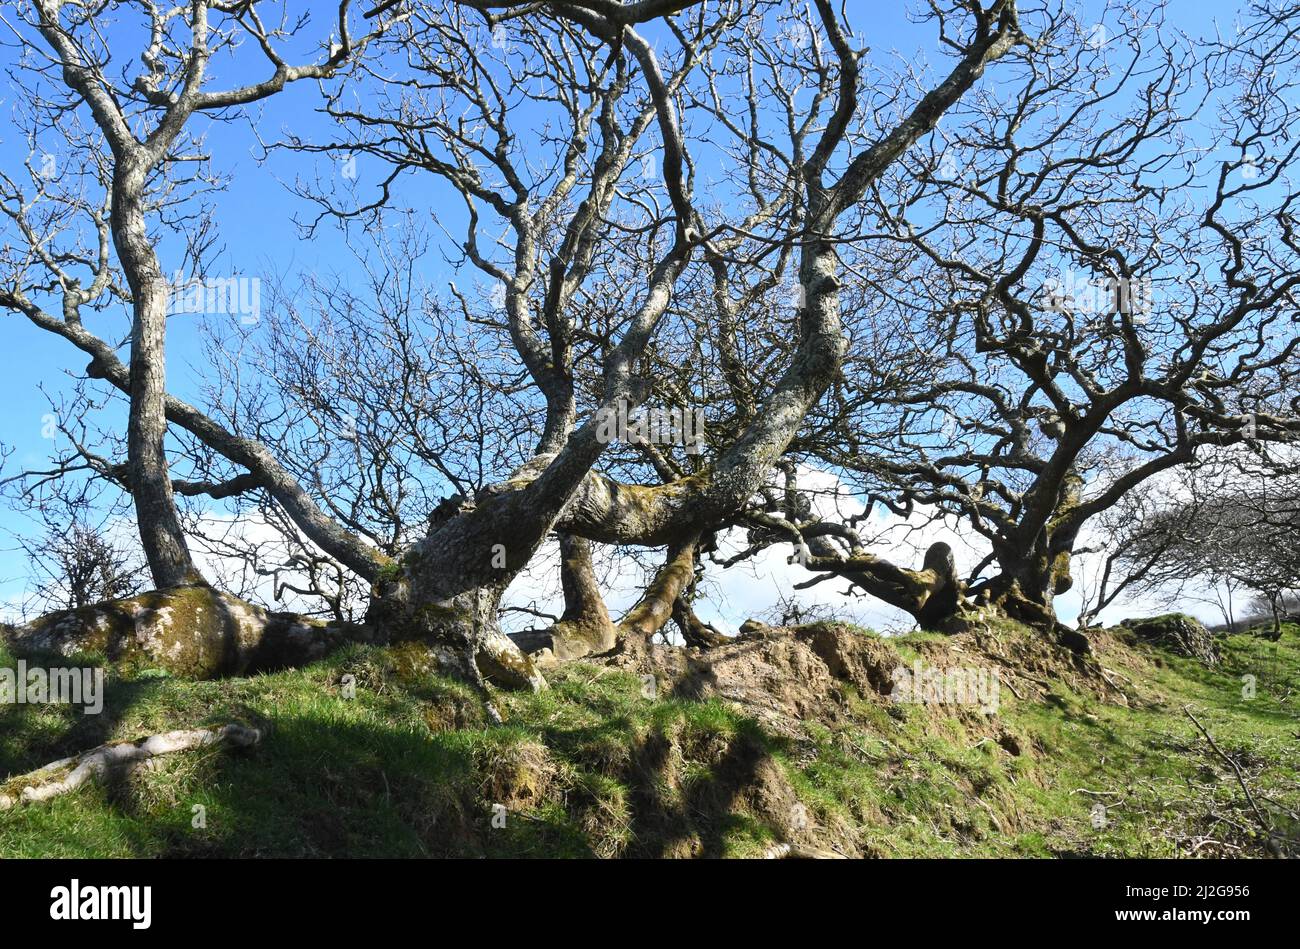 Radici, tronco e rami ricoperti di muschio di quercia che fiancheggiano una via di briglia in una giornata di primavera soleggiata sotto un cielo azzurro in Corn Foto Stock